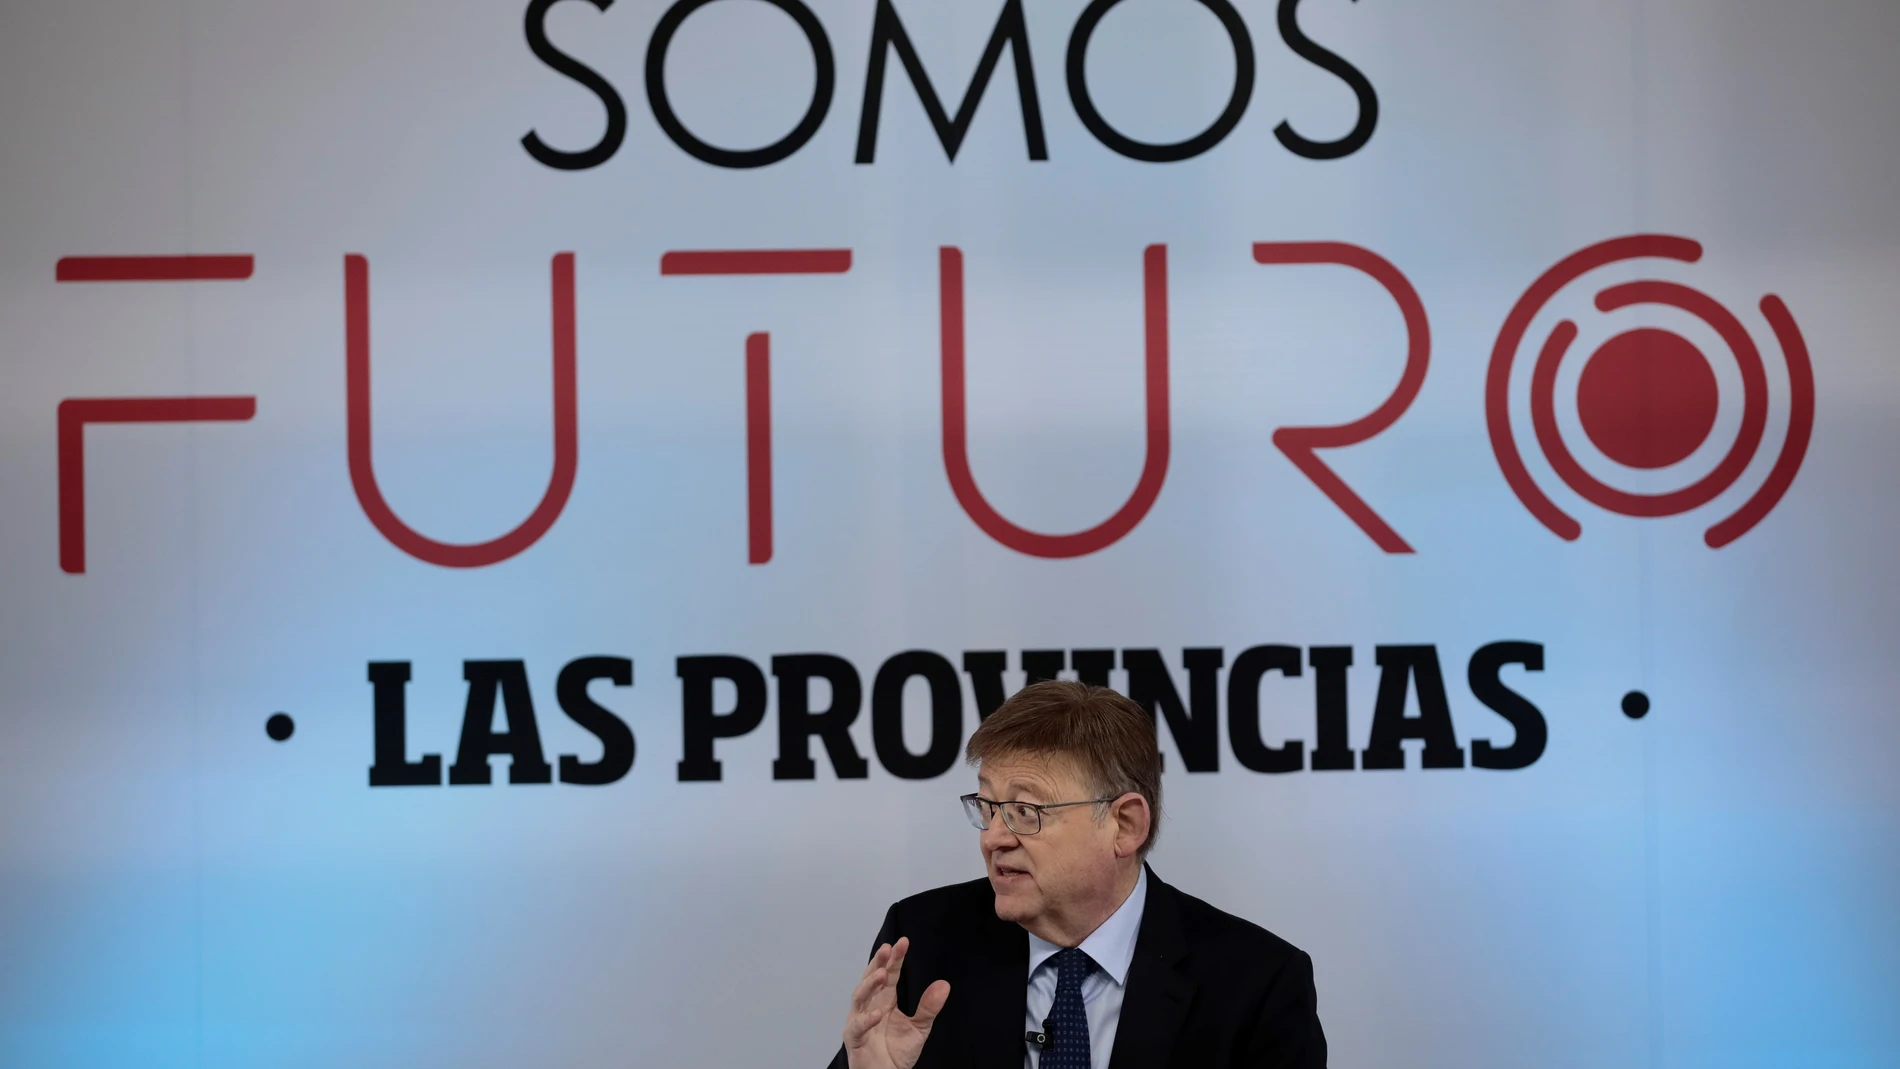 El president de la Generalitat, Ximo Puig, participa en el debate "El futuro de la Comunitat Valenciana", organizado por el Foro Somos Futuro de Las Provincias